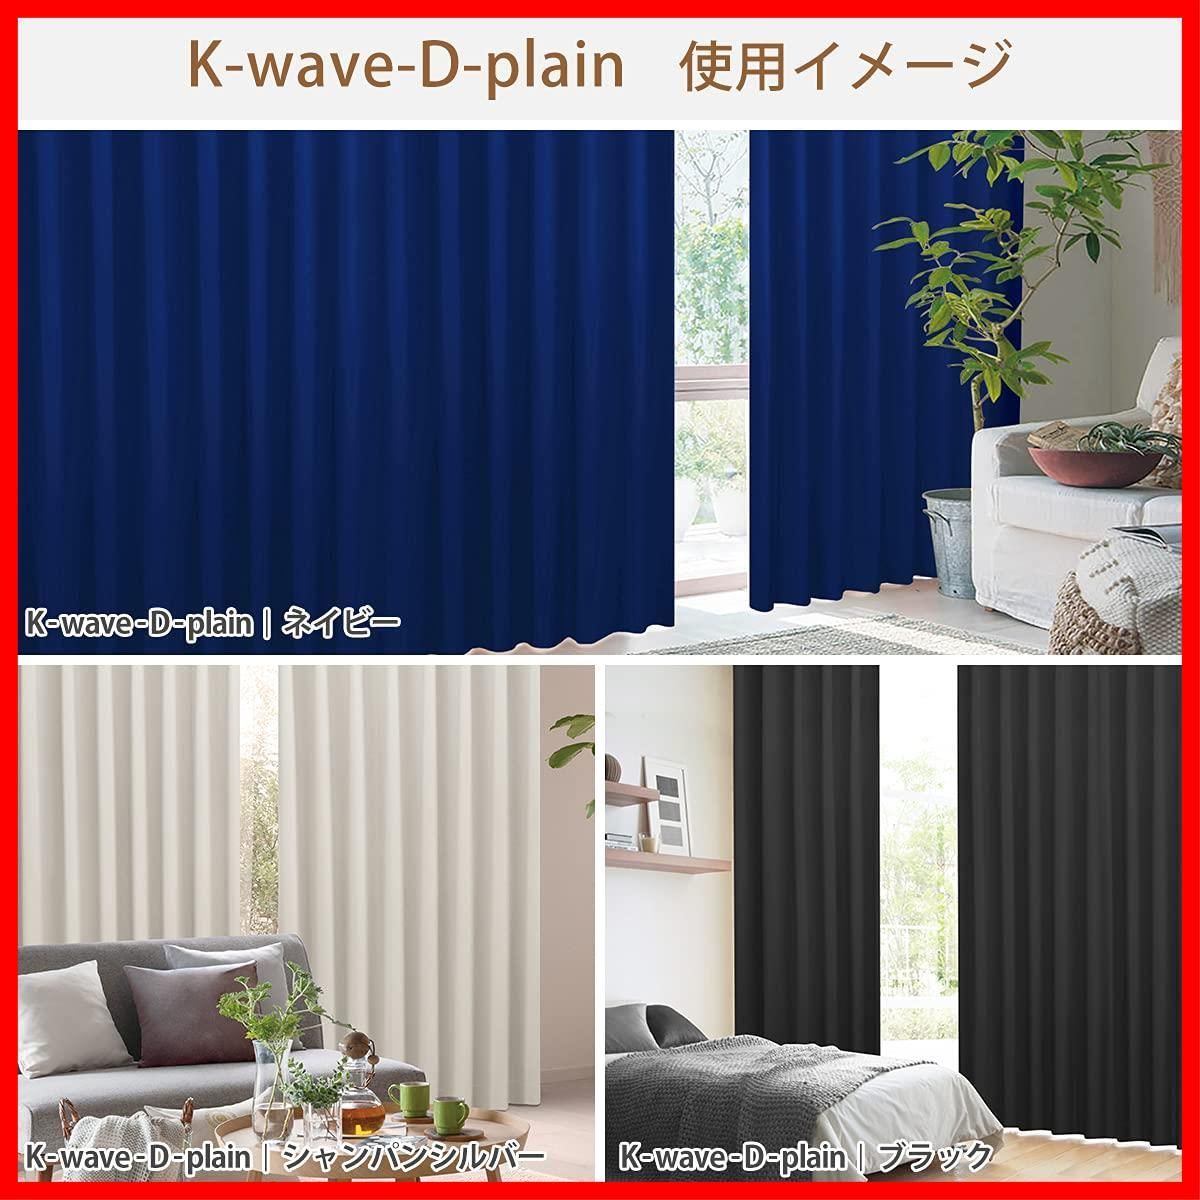 迅速発送】カーテンくれない 節電対策に「K-wave-D-plain」 日本製 防